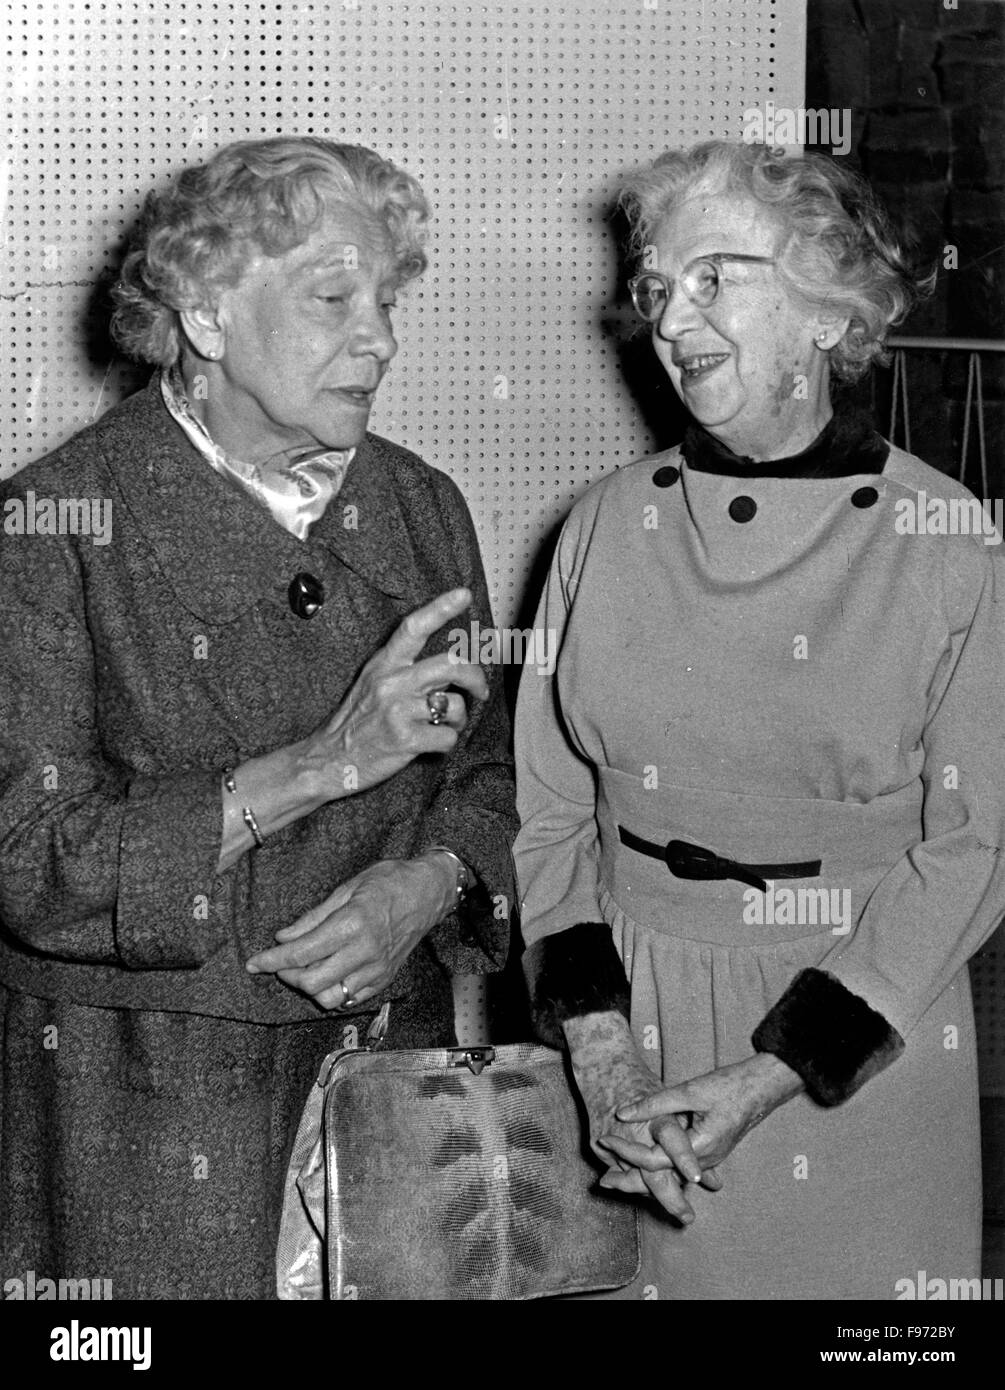 Deutsche Schauspielerin Tilla Durieux (links) mit Lotte Klein, Deutschland 1950er Jahre. Attrice tedesca Tilla Durieux (sinistra) con Lotte Klein, Germania degli anni cinquanta. Foto Stock